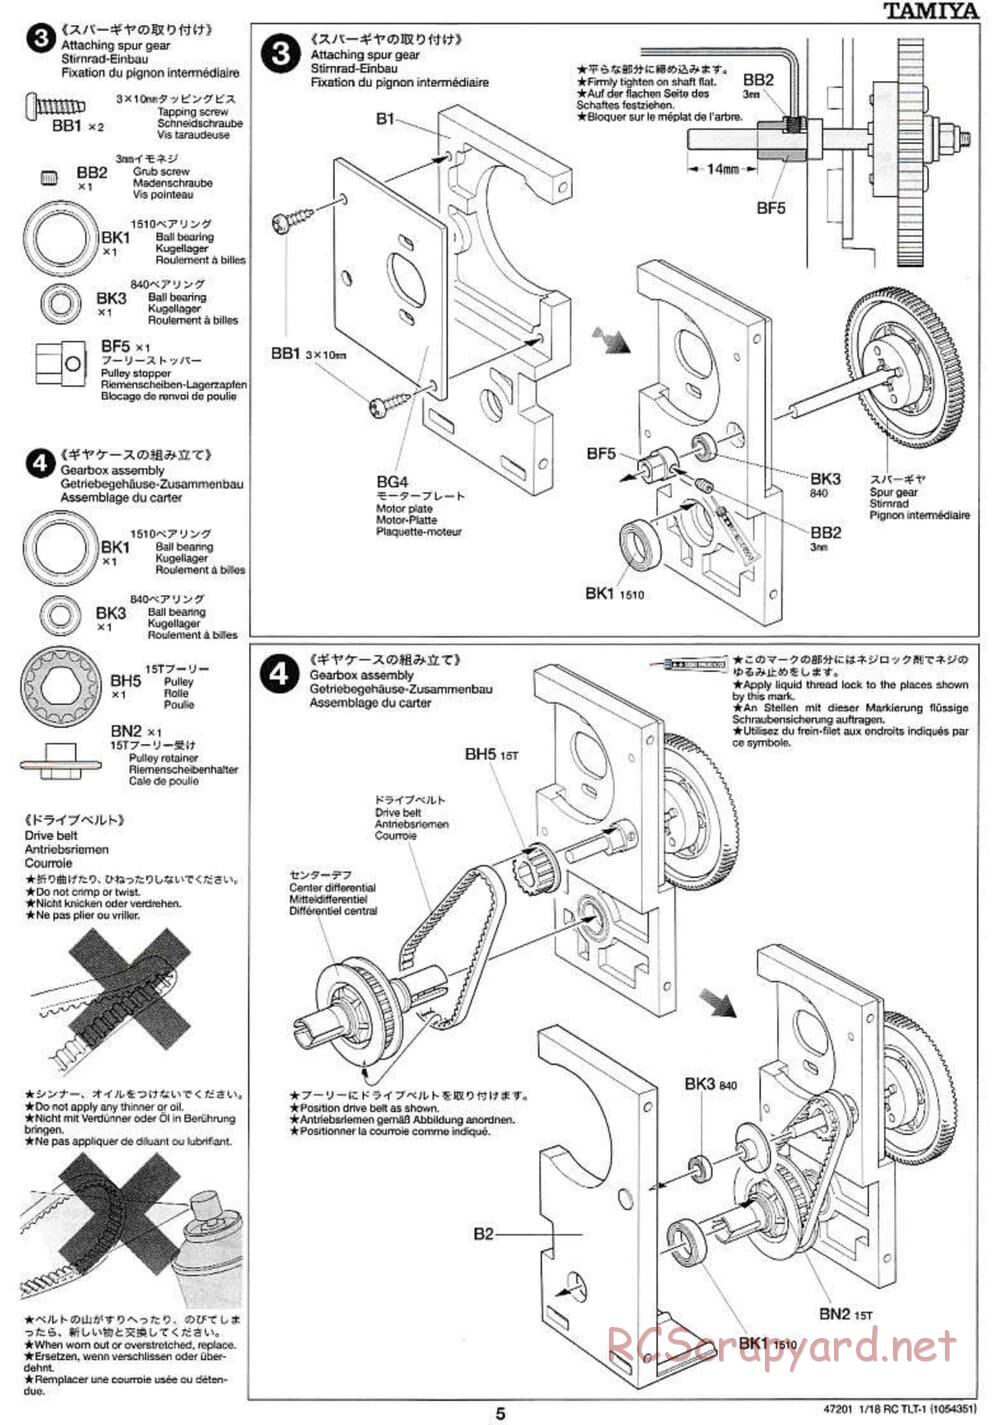 Tamiya - Rock Buster - TLT-1 Chassis - Manual - Page 5